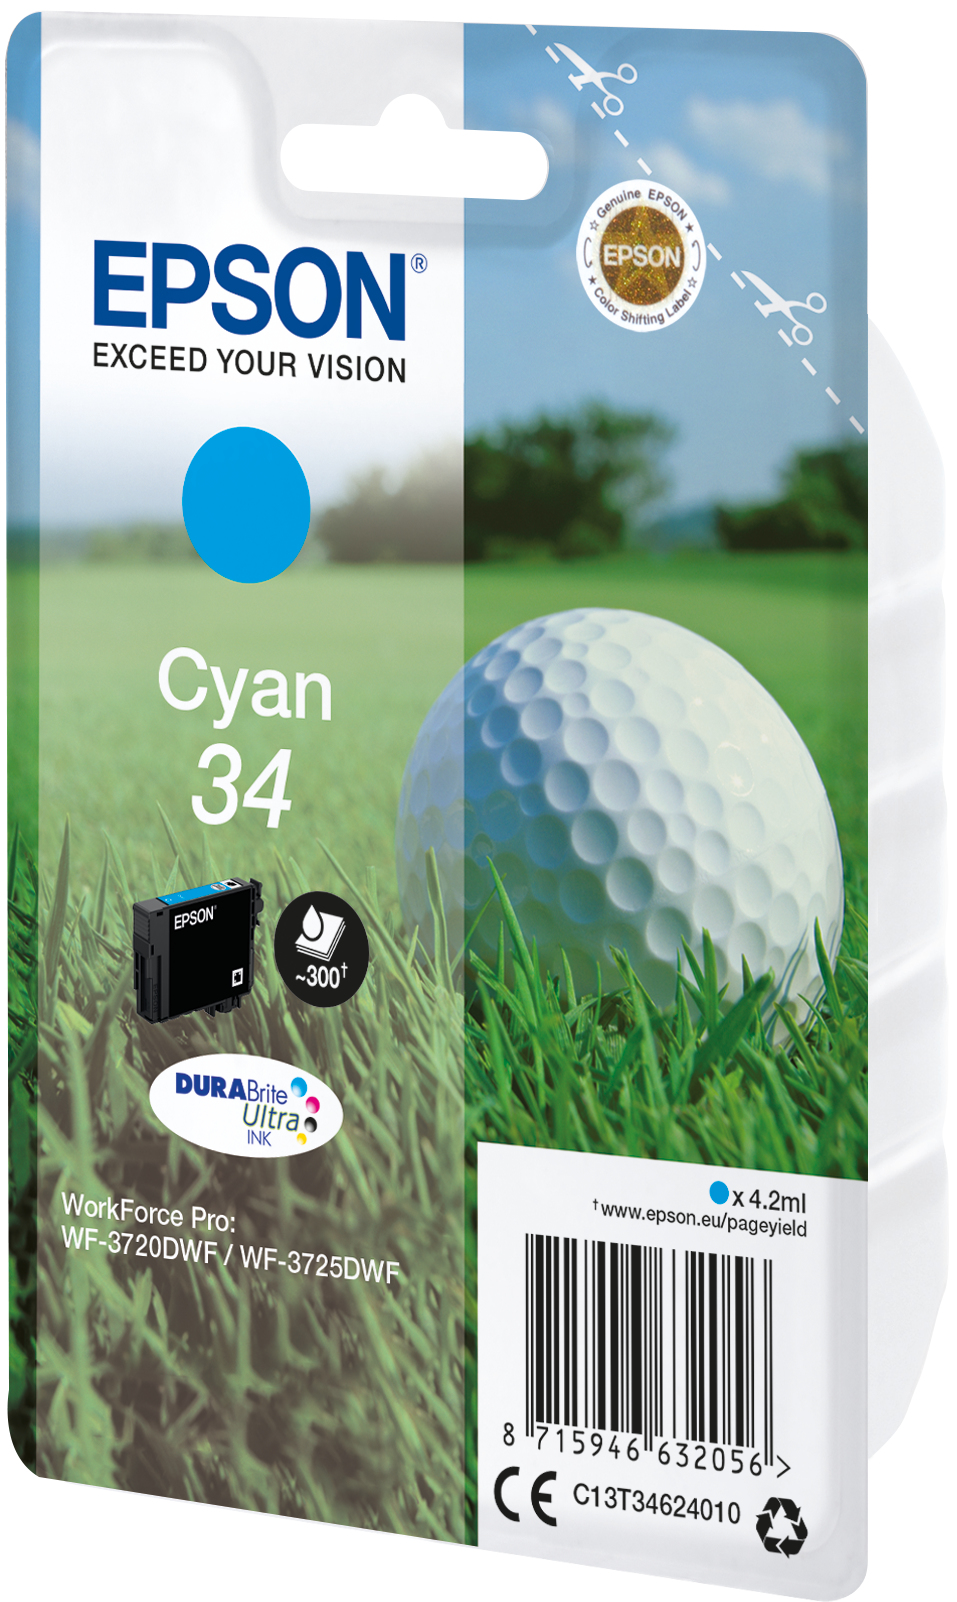 Epson Golf ball Singlepack Cyan 34 DURABrite Ultra Ink - Standardertrag - 4,2 ml - 300 Seiten - 1 Stück(e)